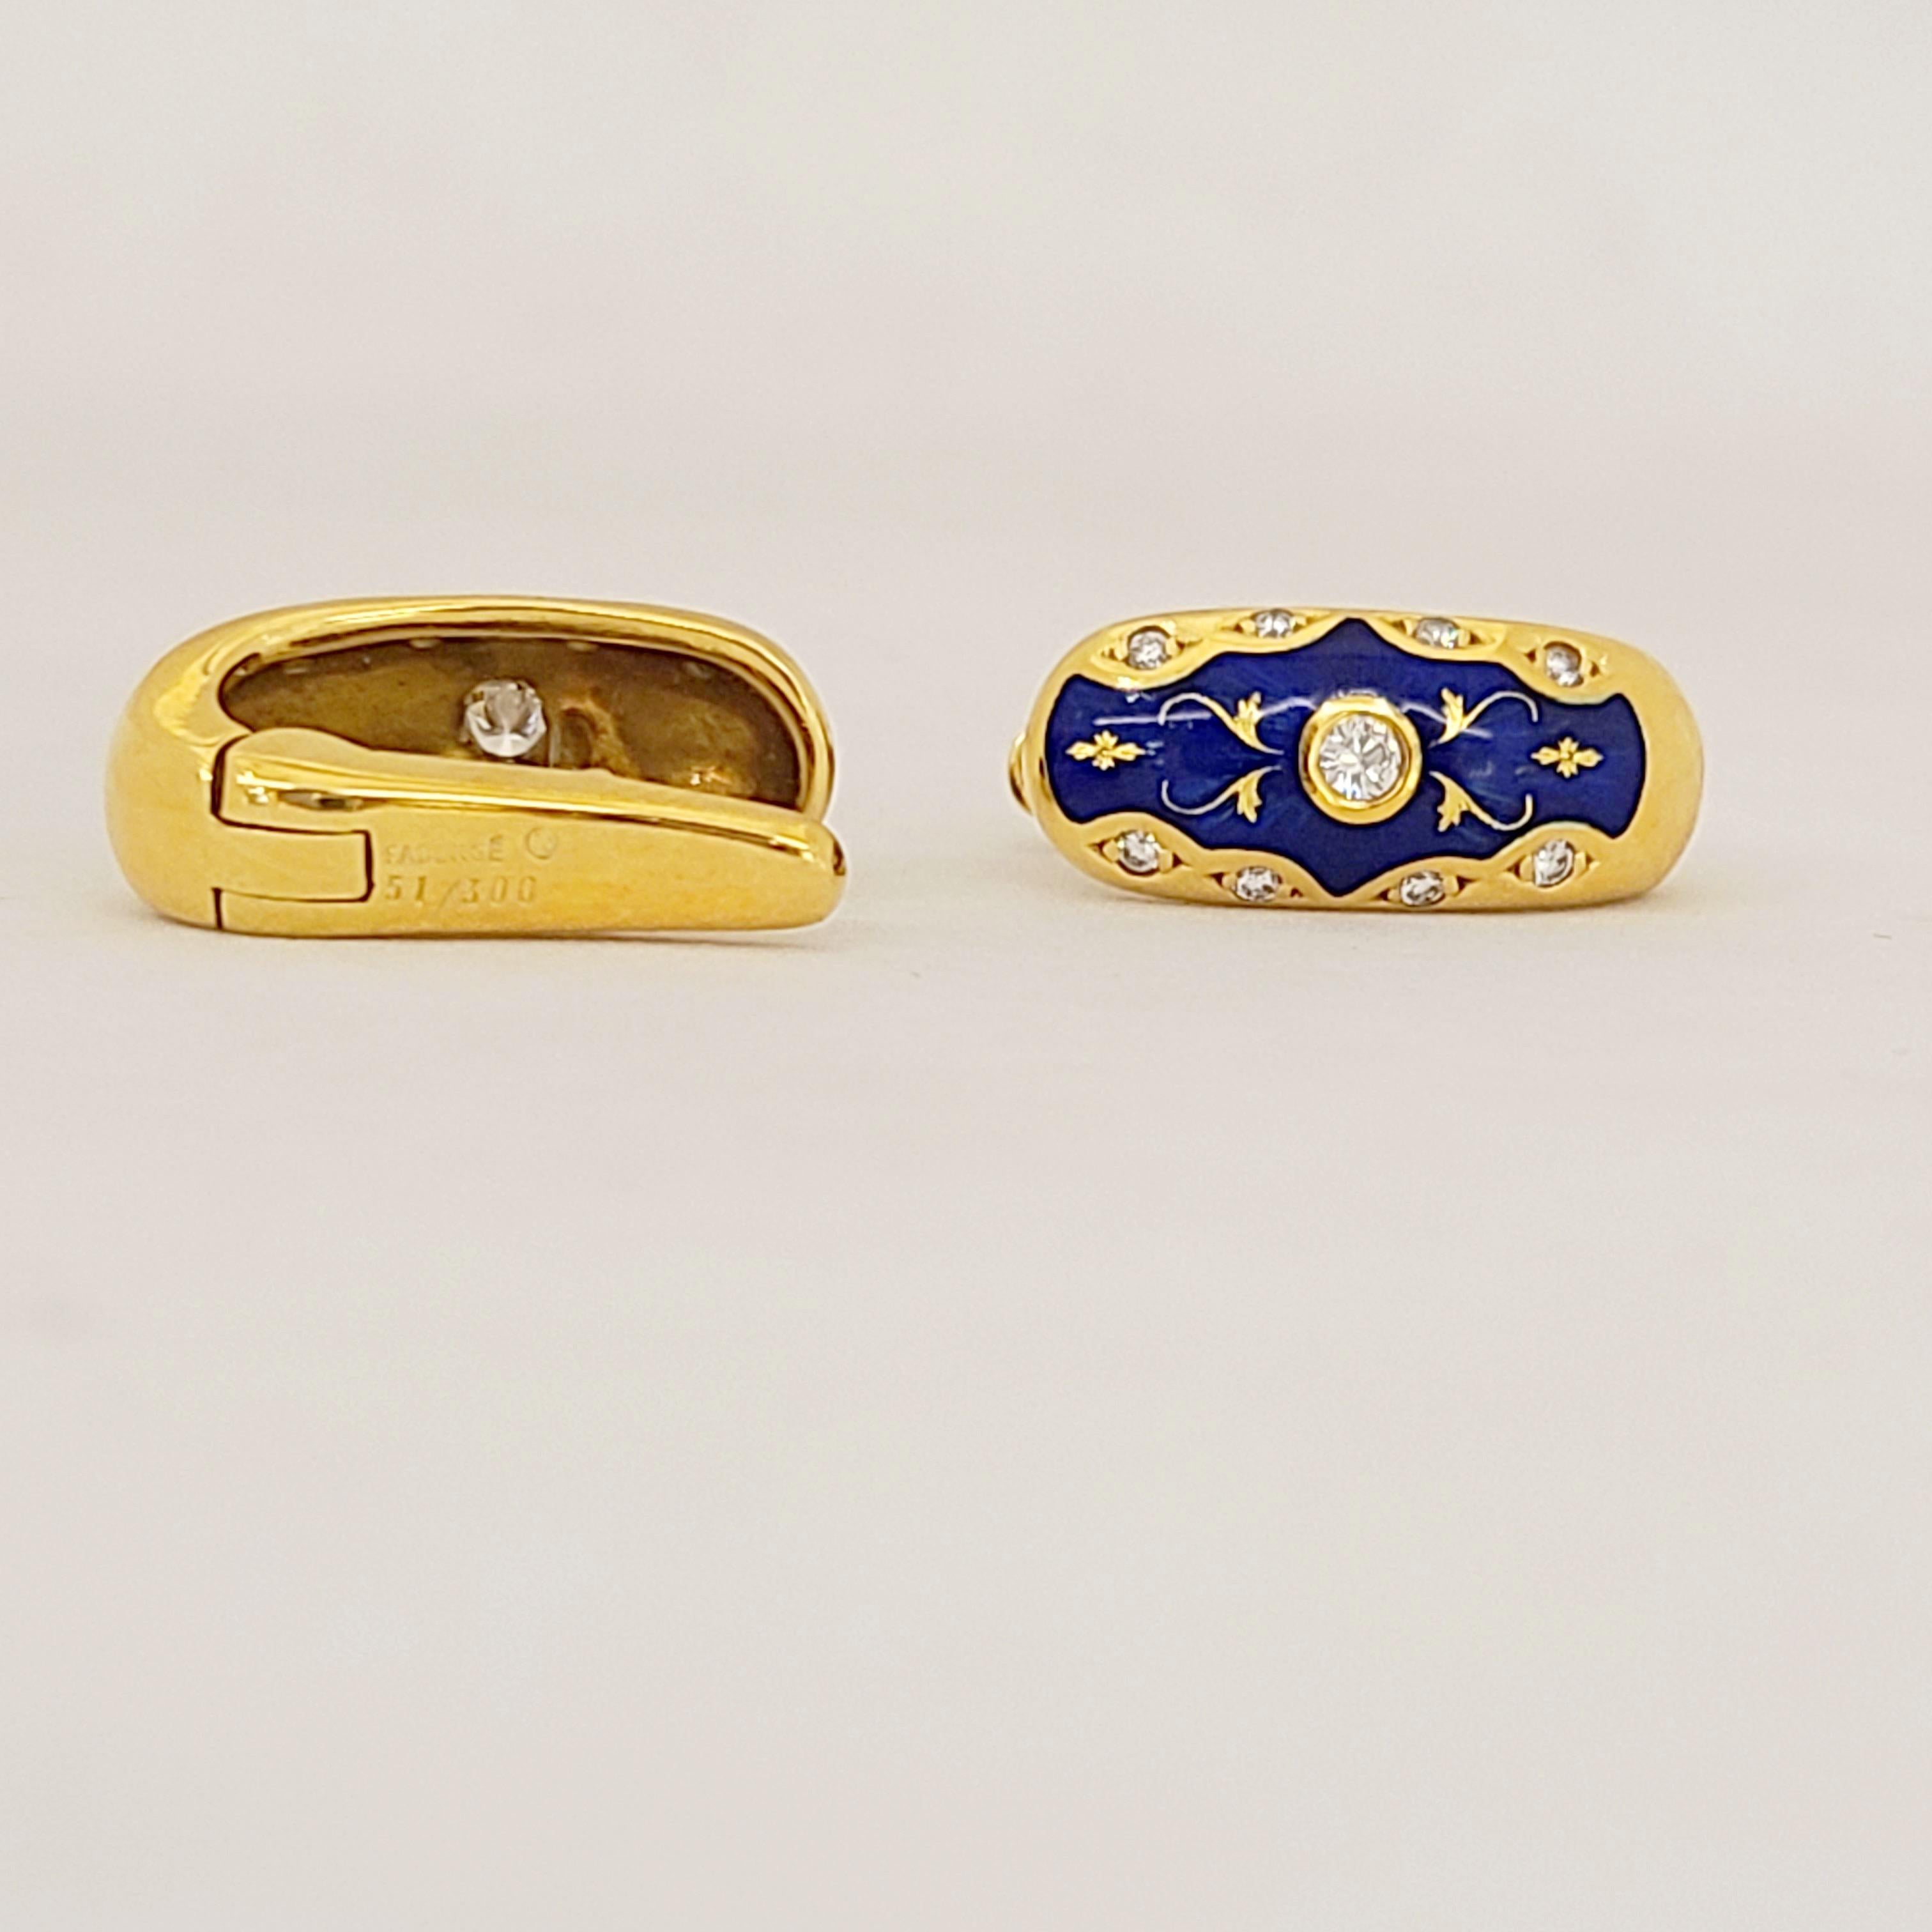 Diese modernen Faberge Ohrringe aus 18-karätigem Gelbgold sind mit einem runden Brillanten besetzt. Die Ohrringe sind aus strahlend blauem Emaille gefertigt und mit Diamanten und goldenen Details akzentuiert.
Die Ohrringe wurden von Victor Mayor